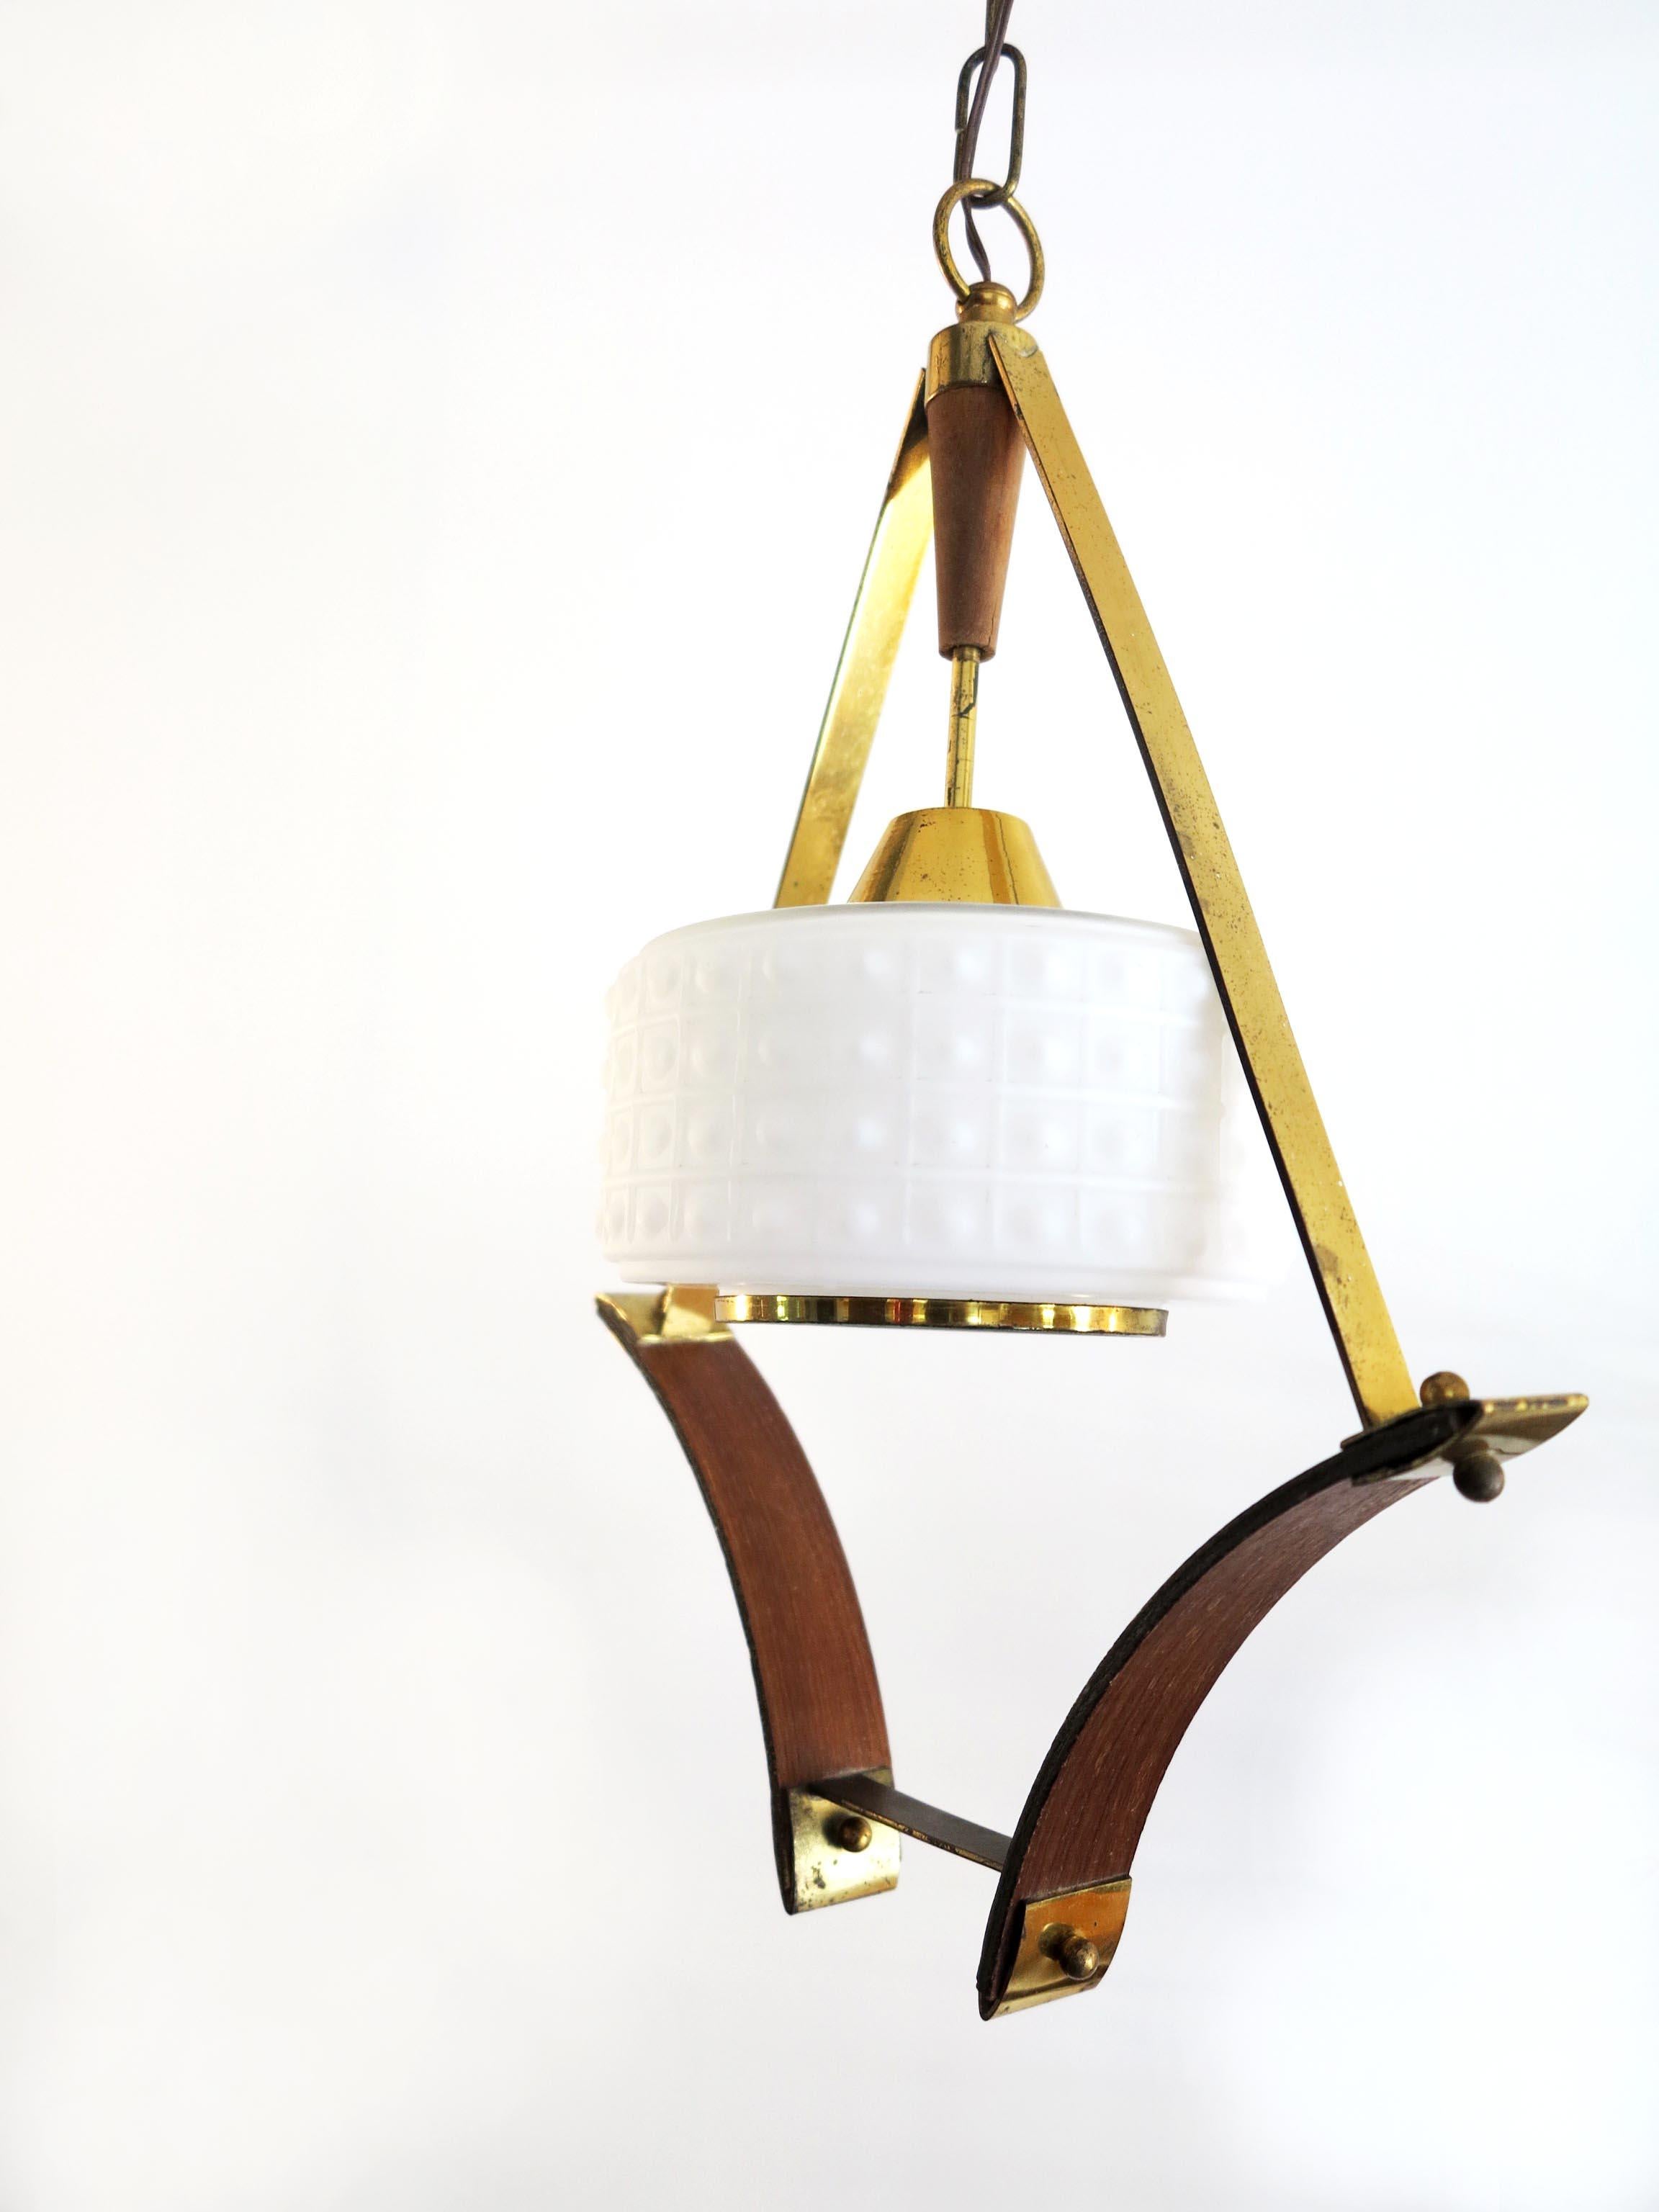 Scandinavian Pendant or Ceiling Lamp in Teak Wood Opaline Glass & Brass, 1950s For Sale 1